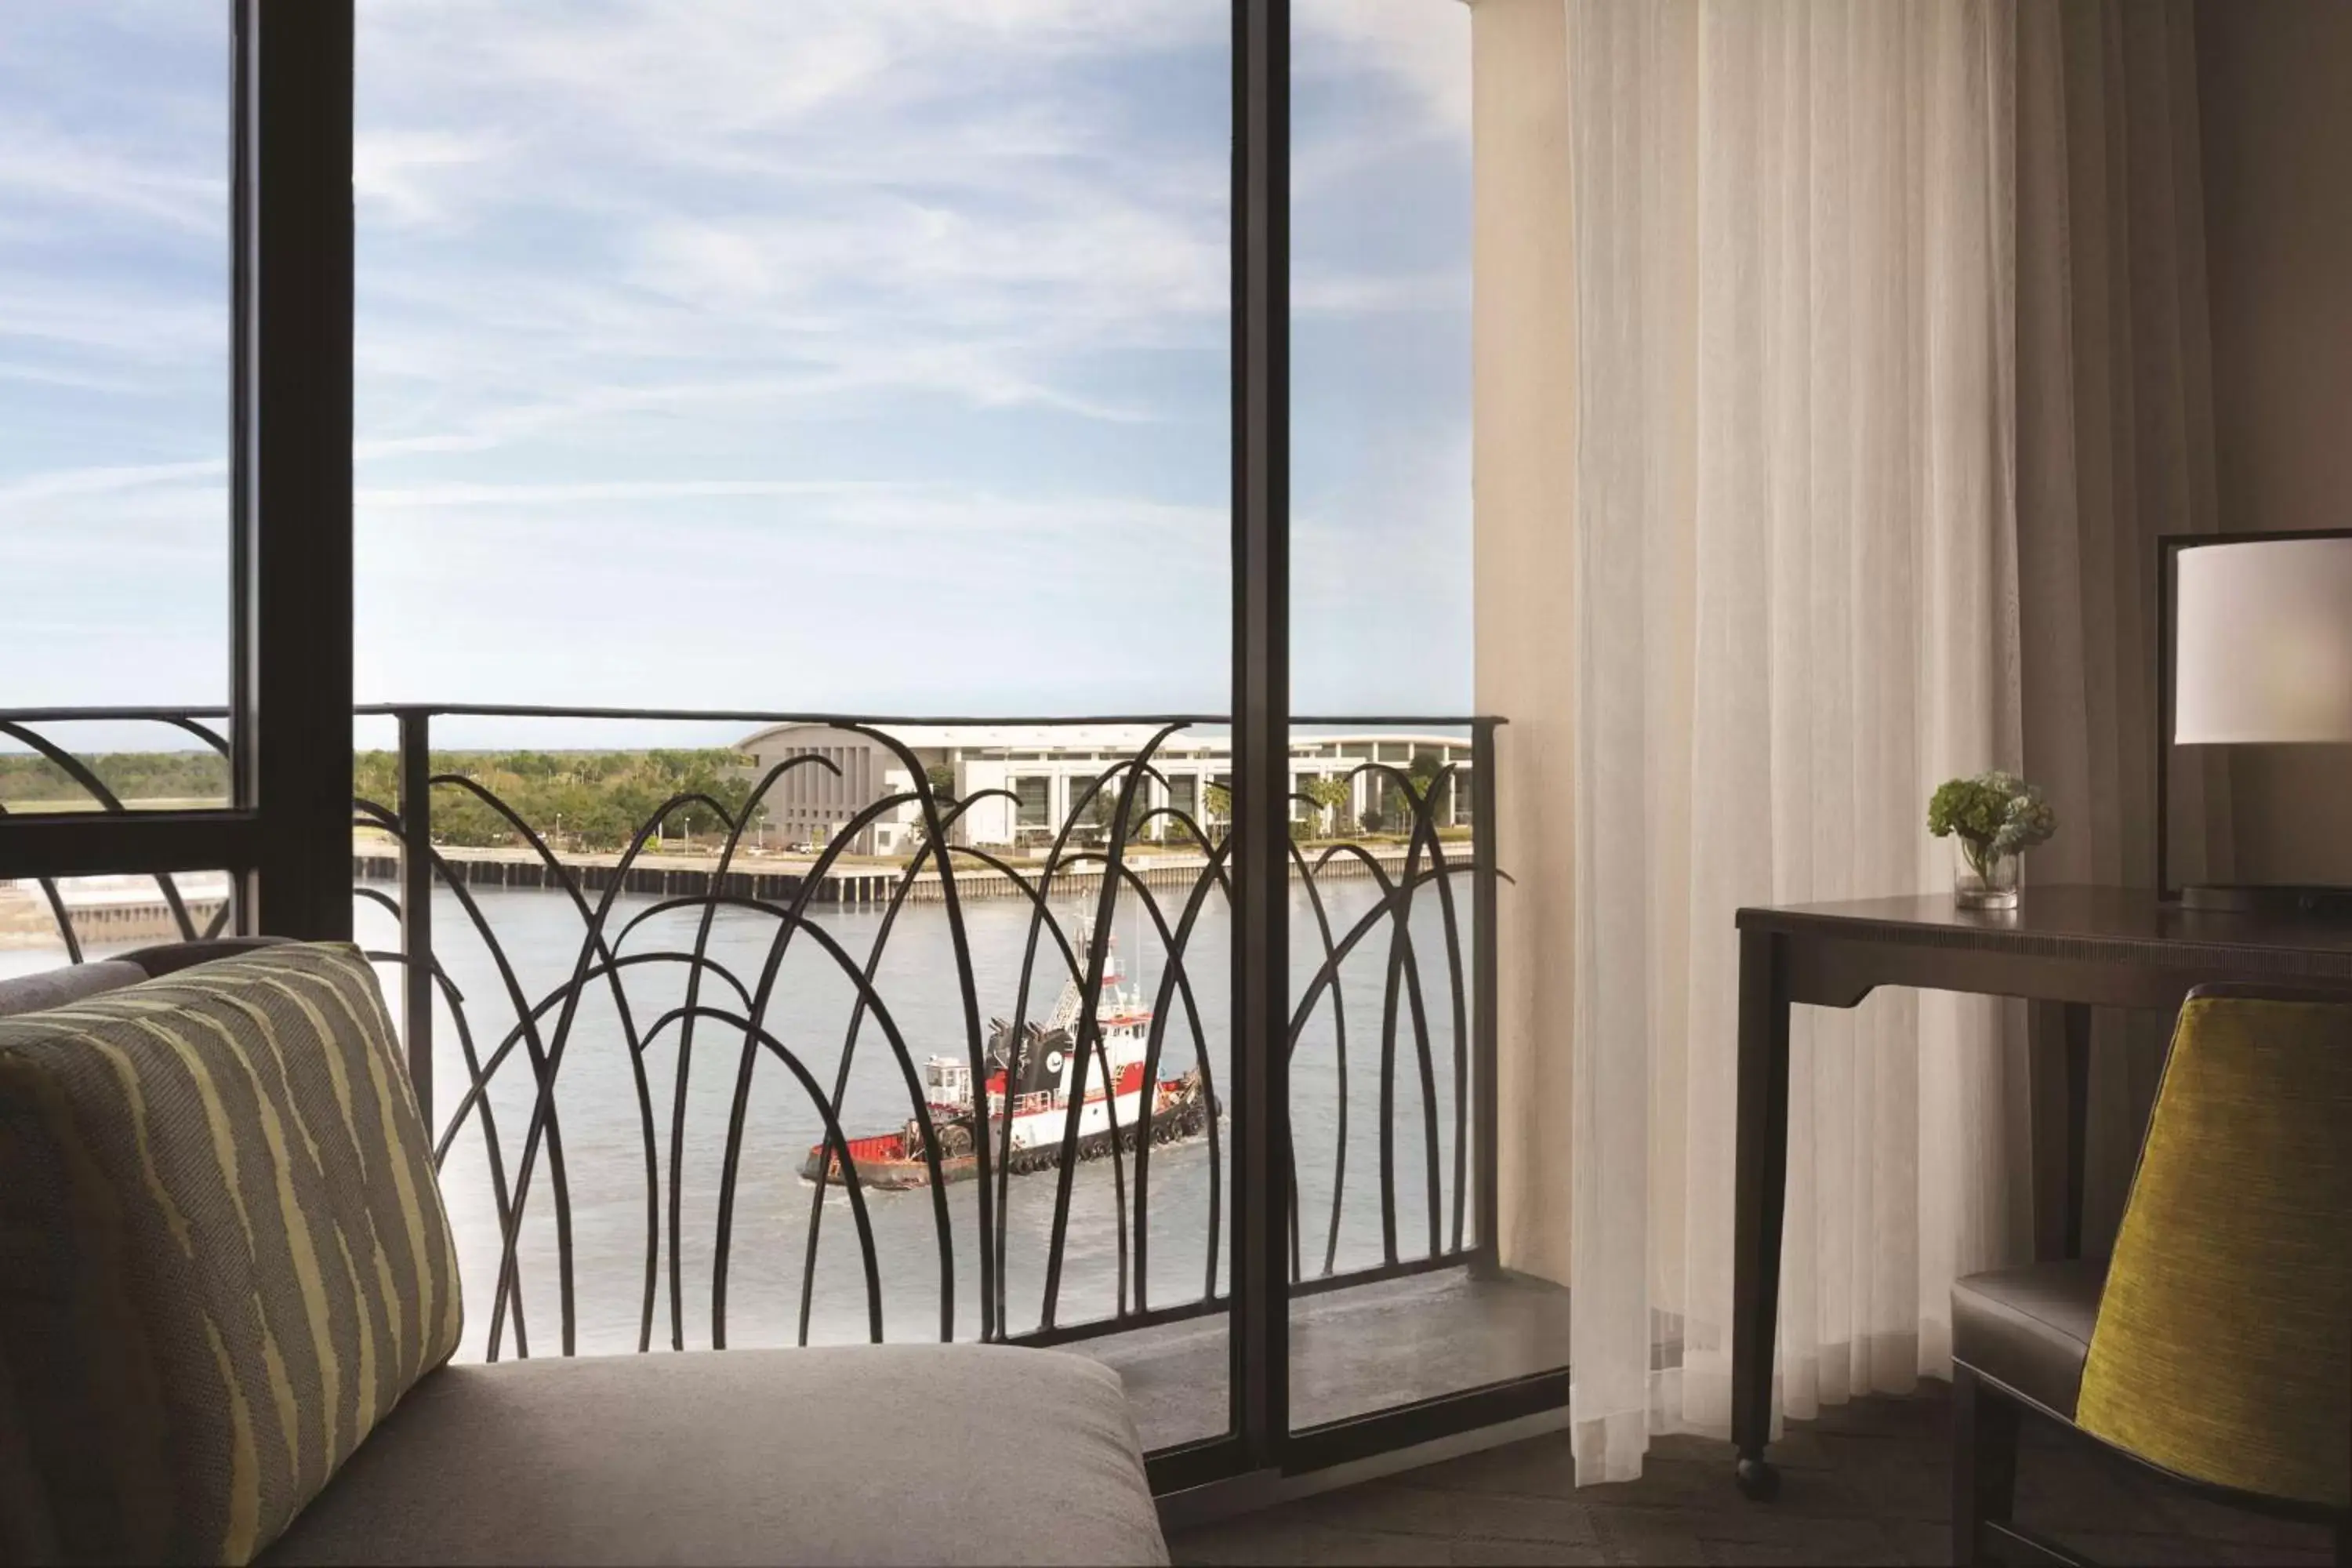 Location, Balcony/Terrace in Hyatt Regency Savannah